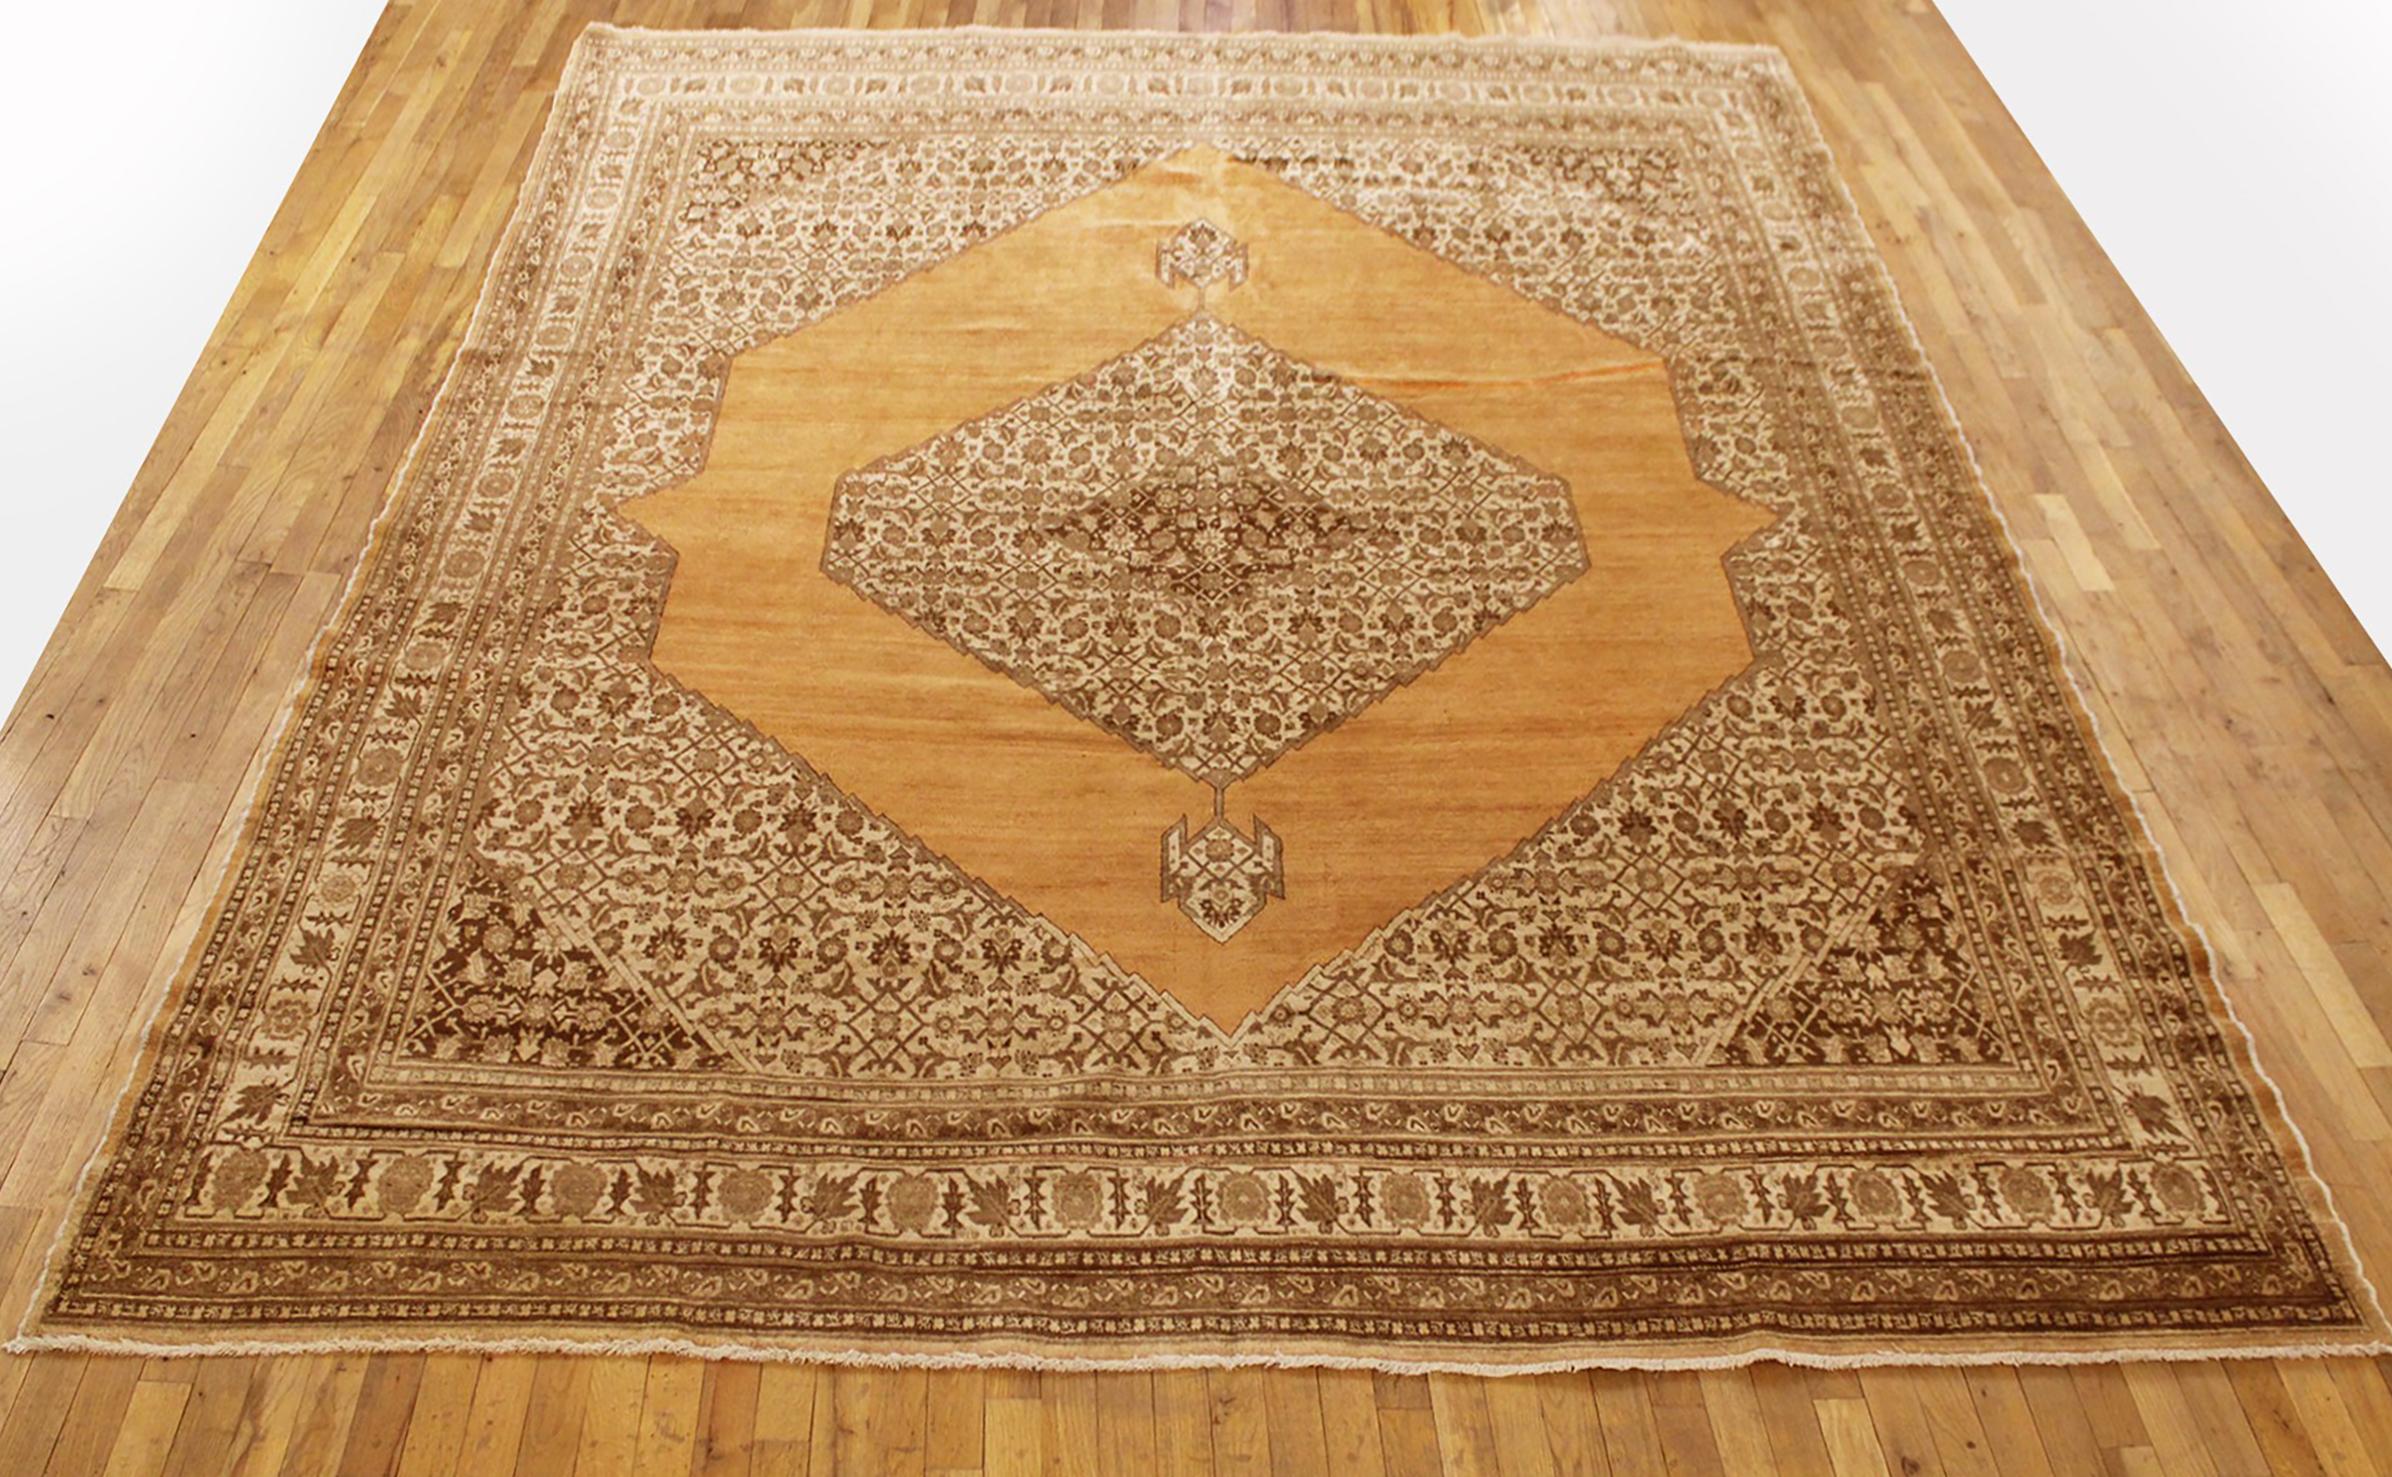 Antique Persian Tabriz Oriental carpet, circa 1900, Room Size.

An antique Persian Tabriz oriental carpet, circa 1900. Size: 11'8